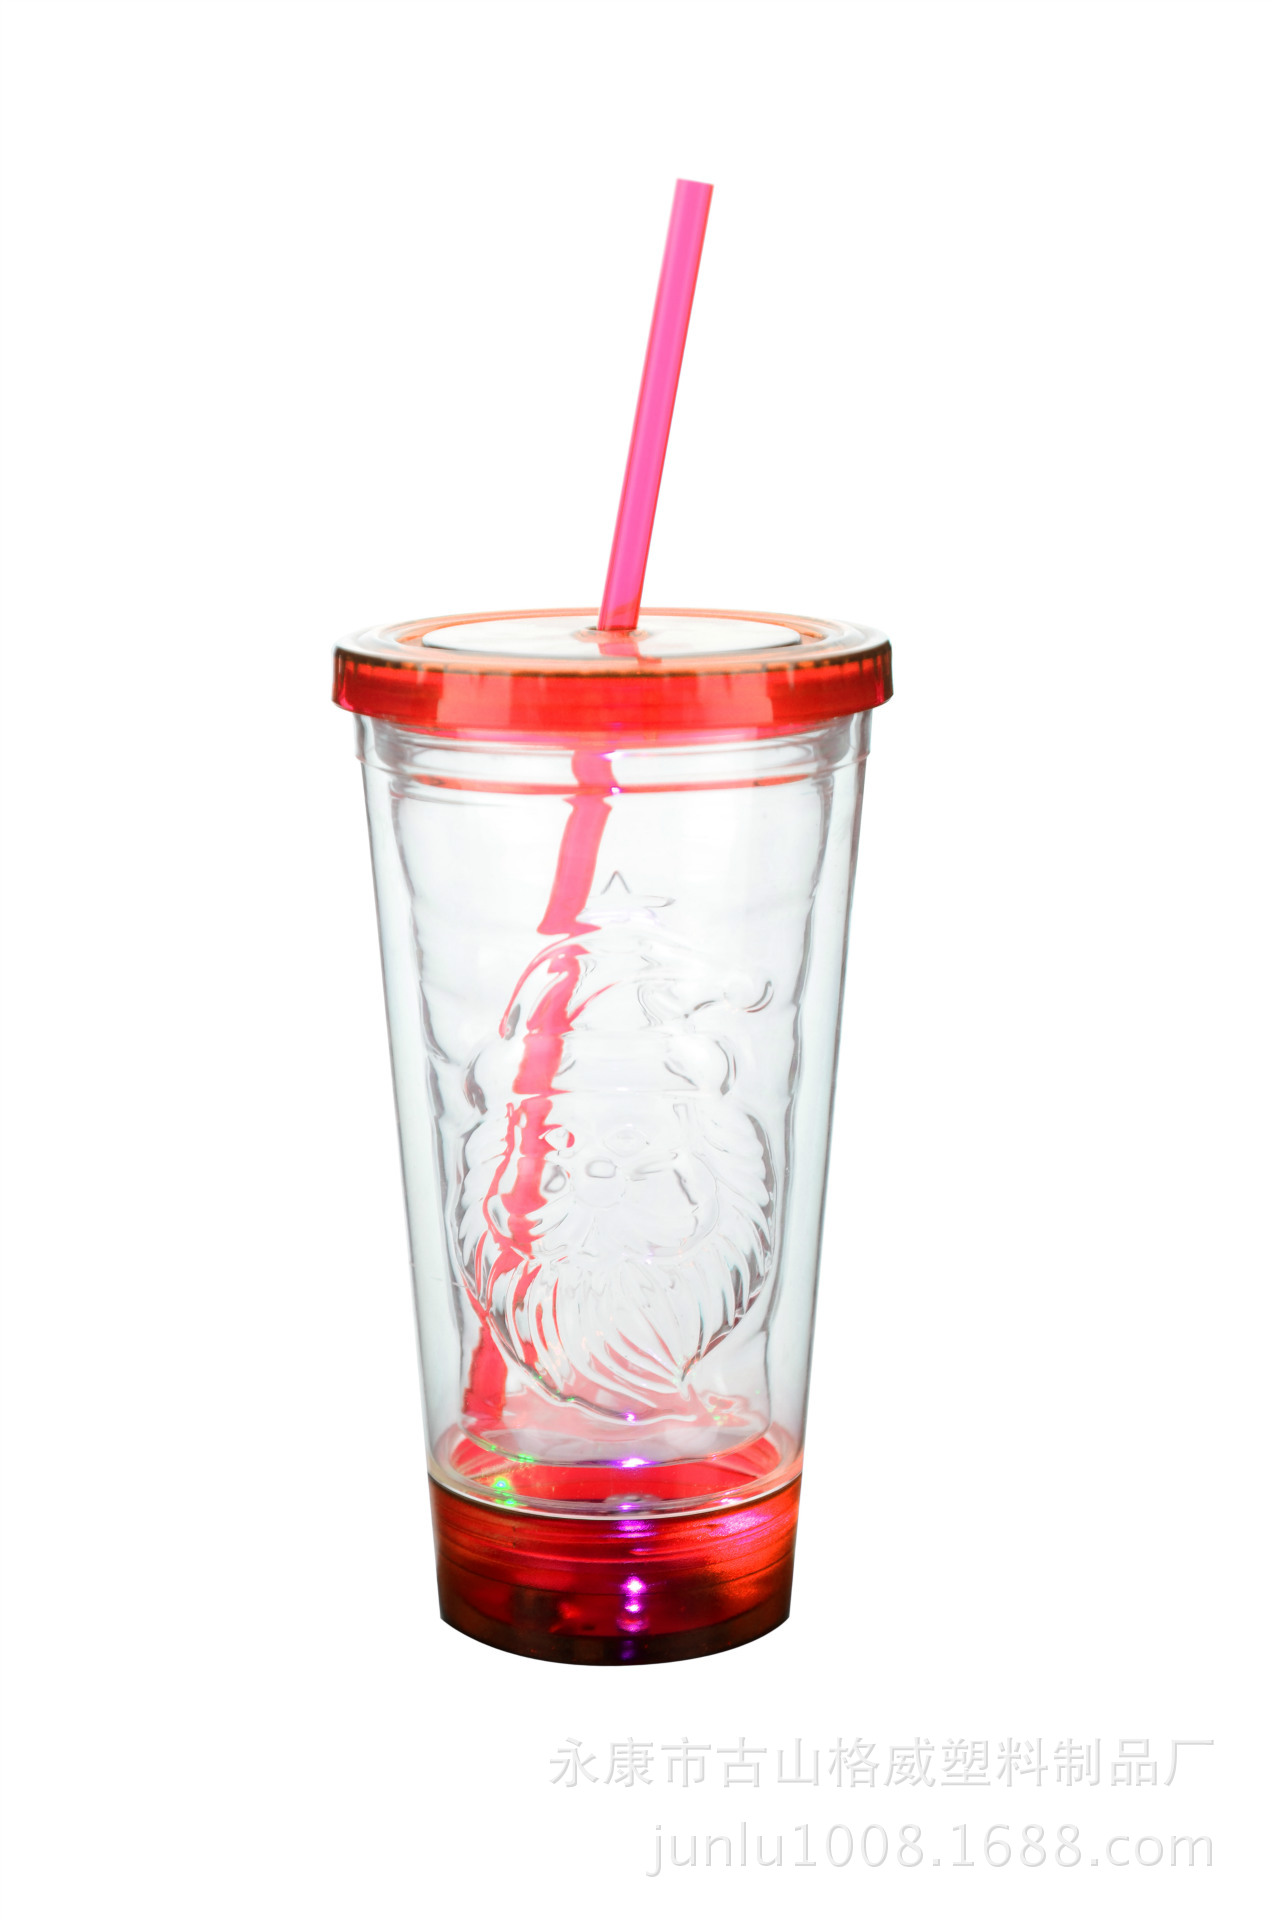 塑料杯 发光杯 双层杯子 吸管杯 创意水杯